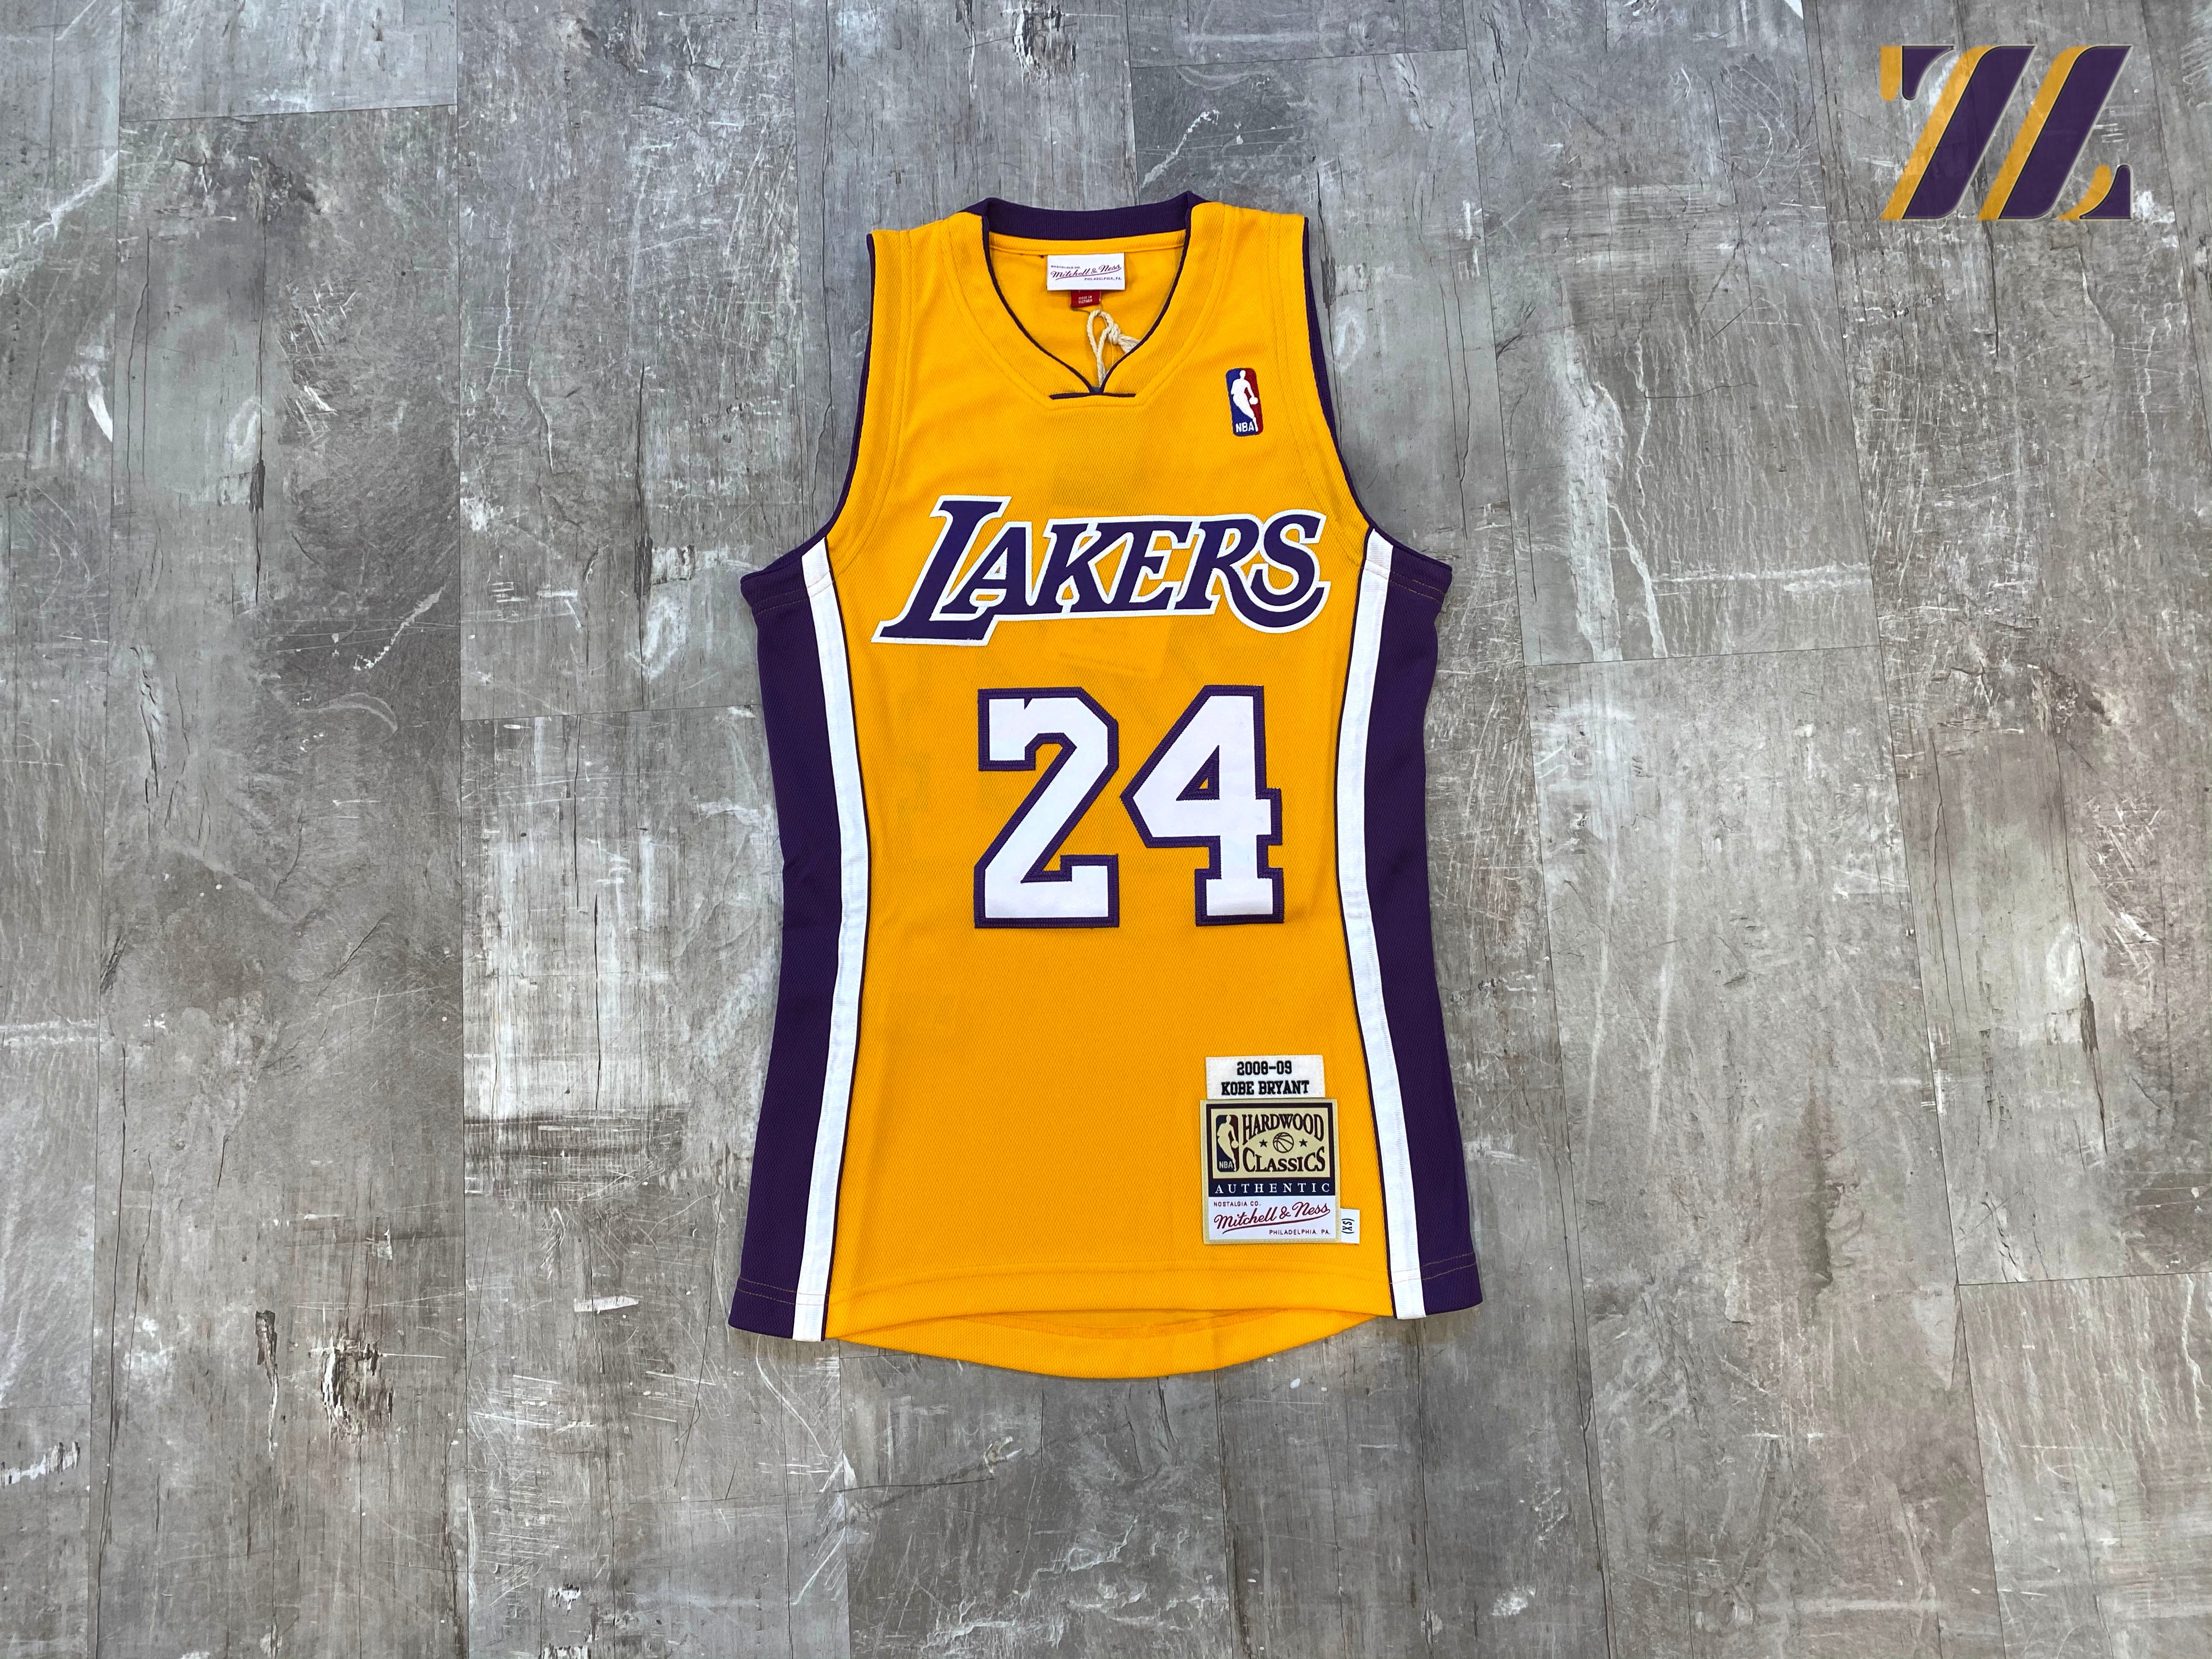 Kobe Bryant Jerseys for sale in Philadelphia, Pennsylvania